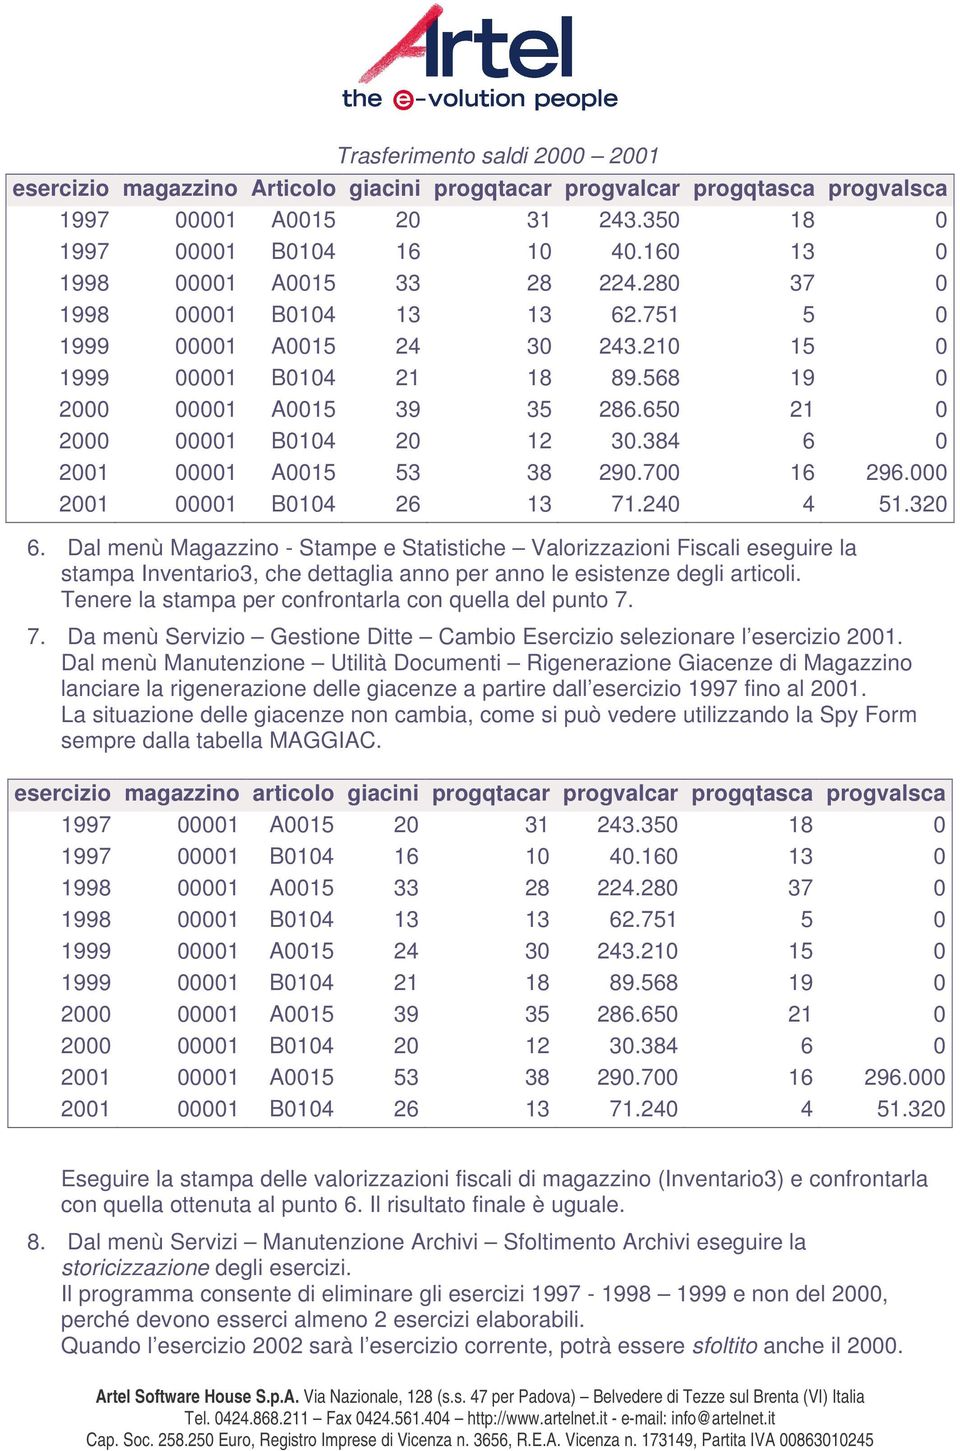 Dal menù Magazzino - Stampe e Statistiche Valorizzazioni Fiscali eseguire la stampa Inventario3, che dettaglia anno per anno le esistenze degli articoli.